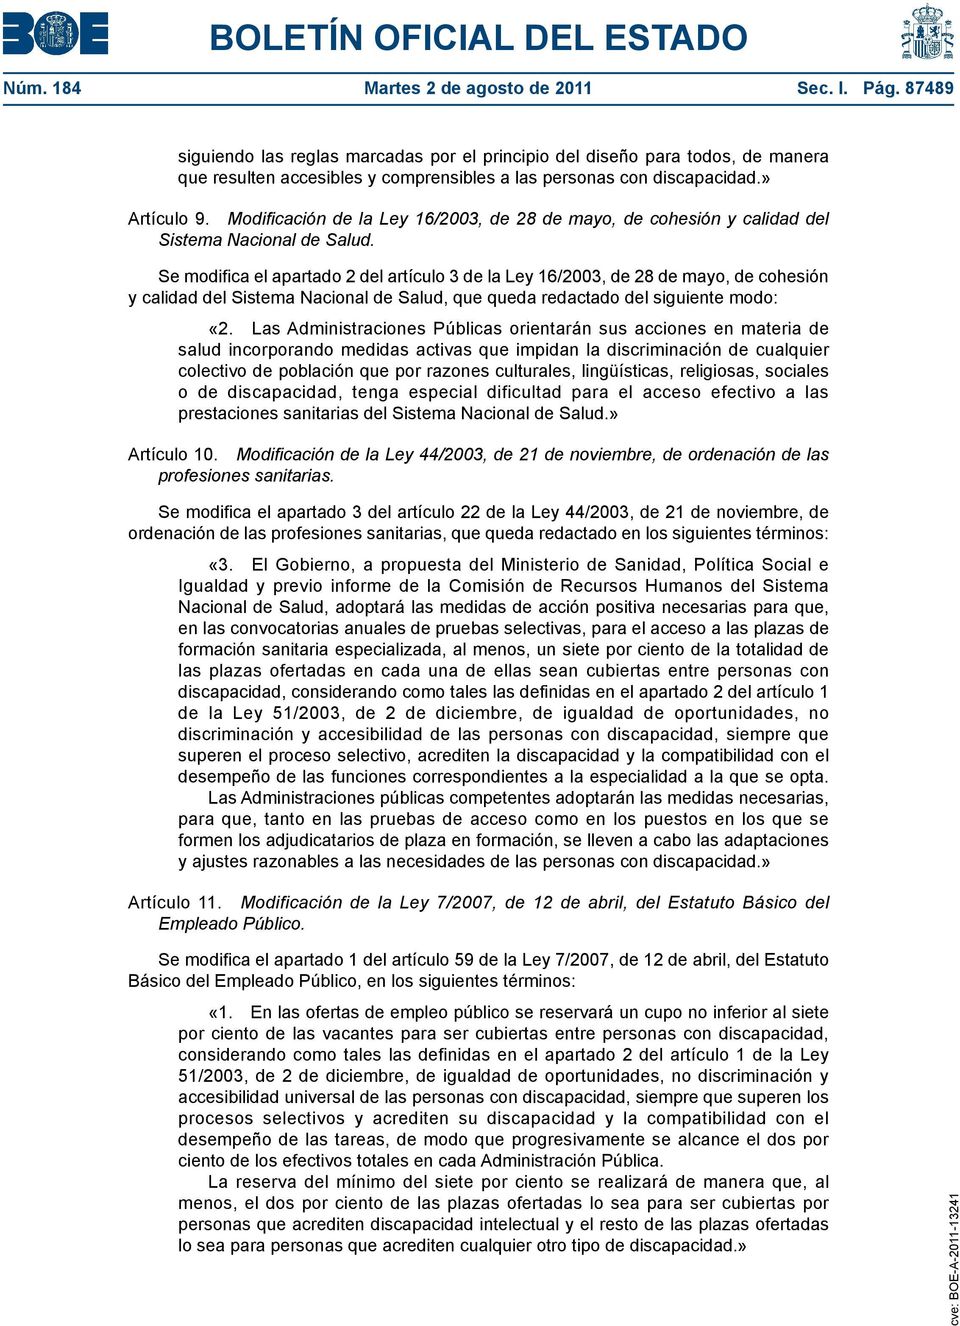 Modificación de la Ley 16/2003, de 28 de mayo, de cohesión y calidad del Sistema Nacional de Salud.